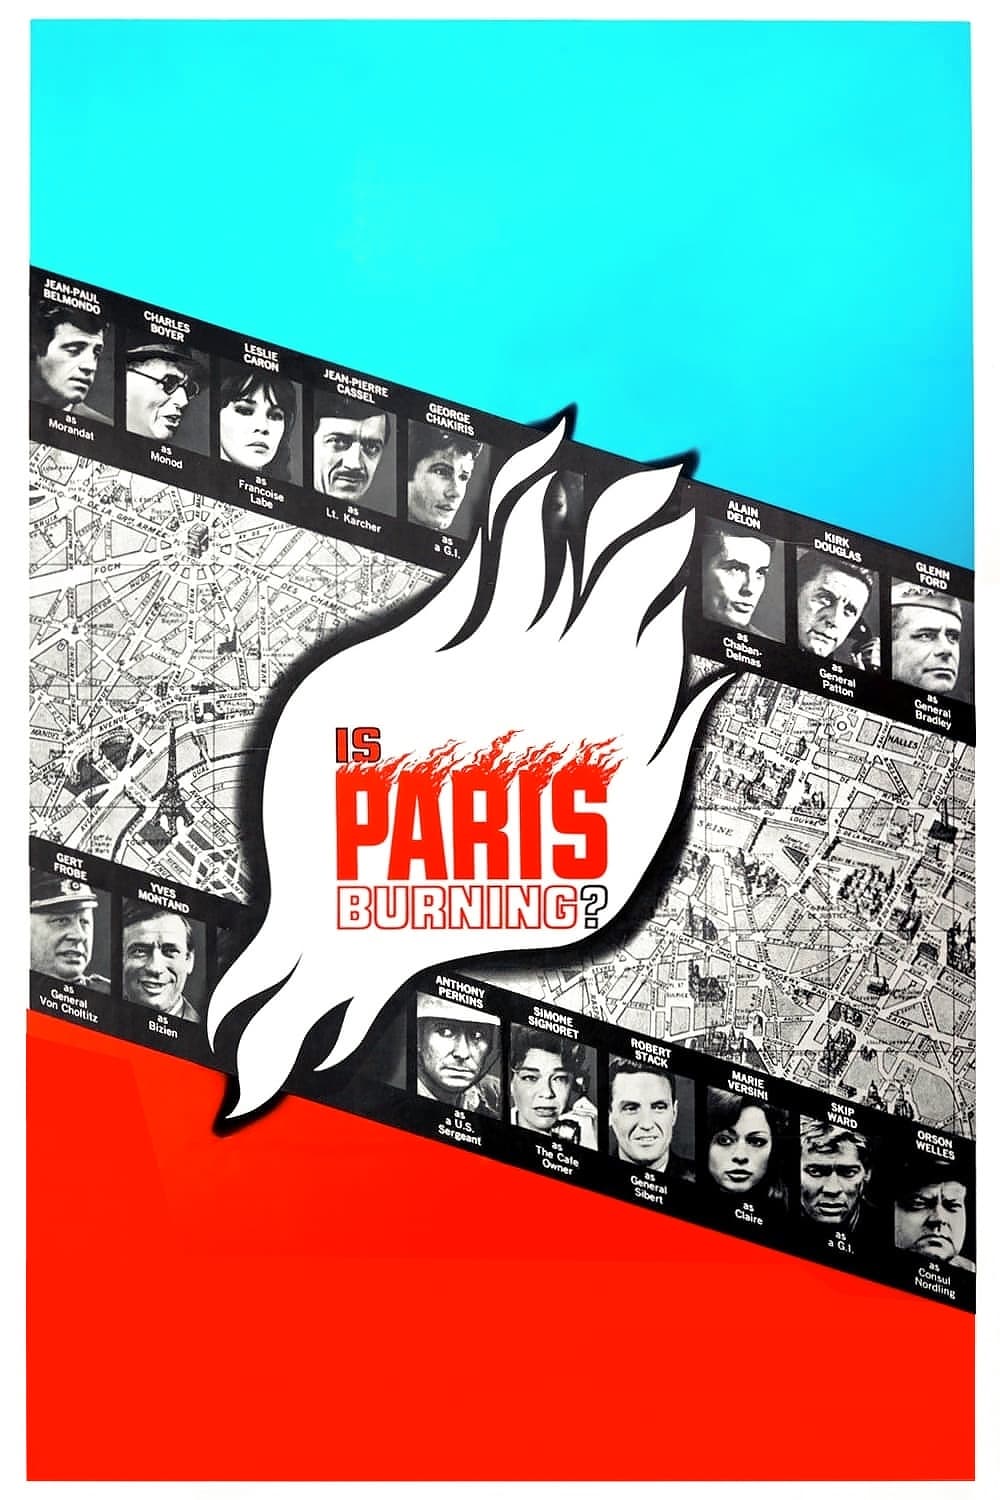 Paris brûle-t-il ? (1966)